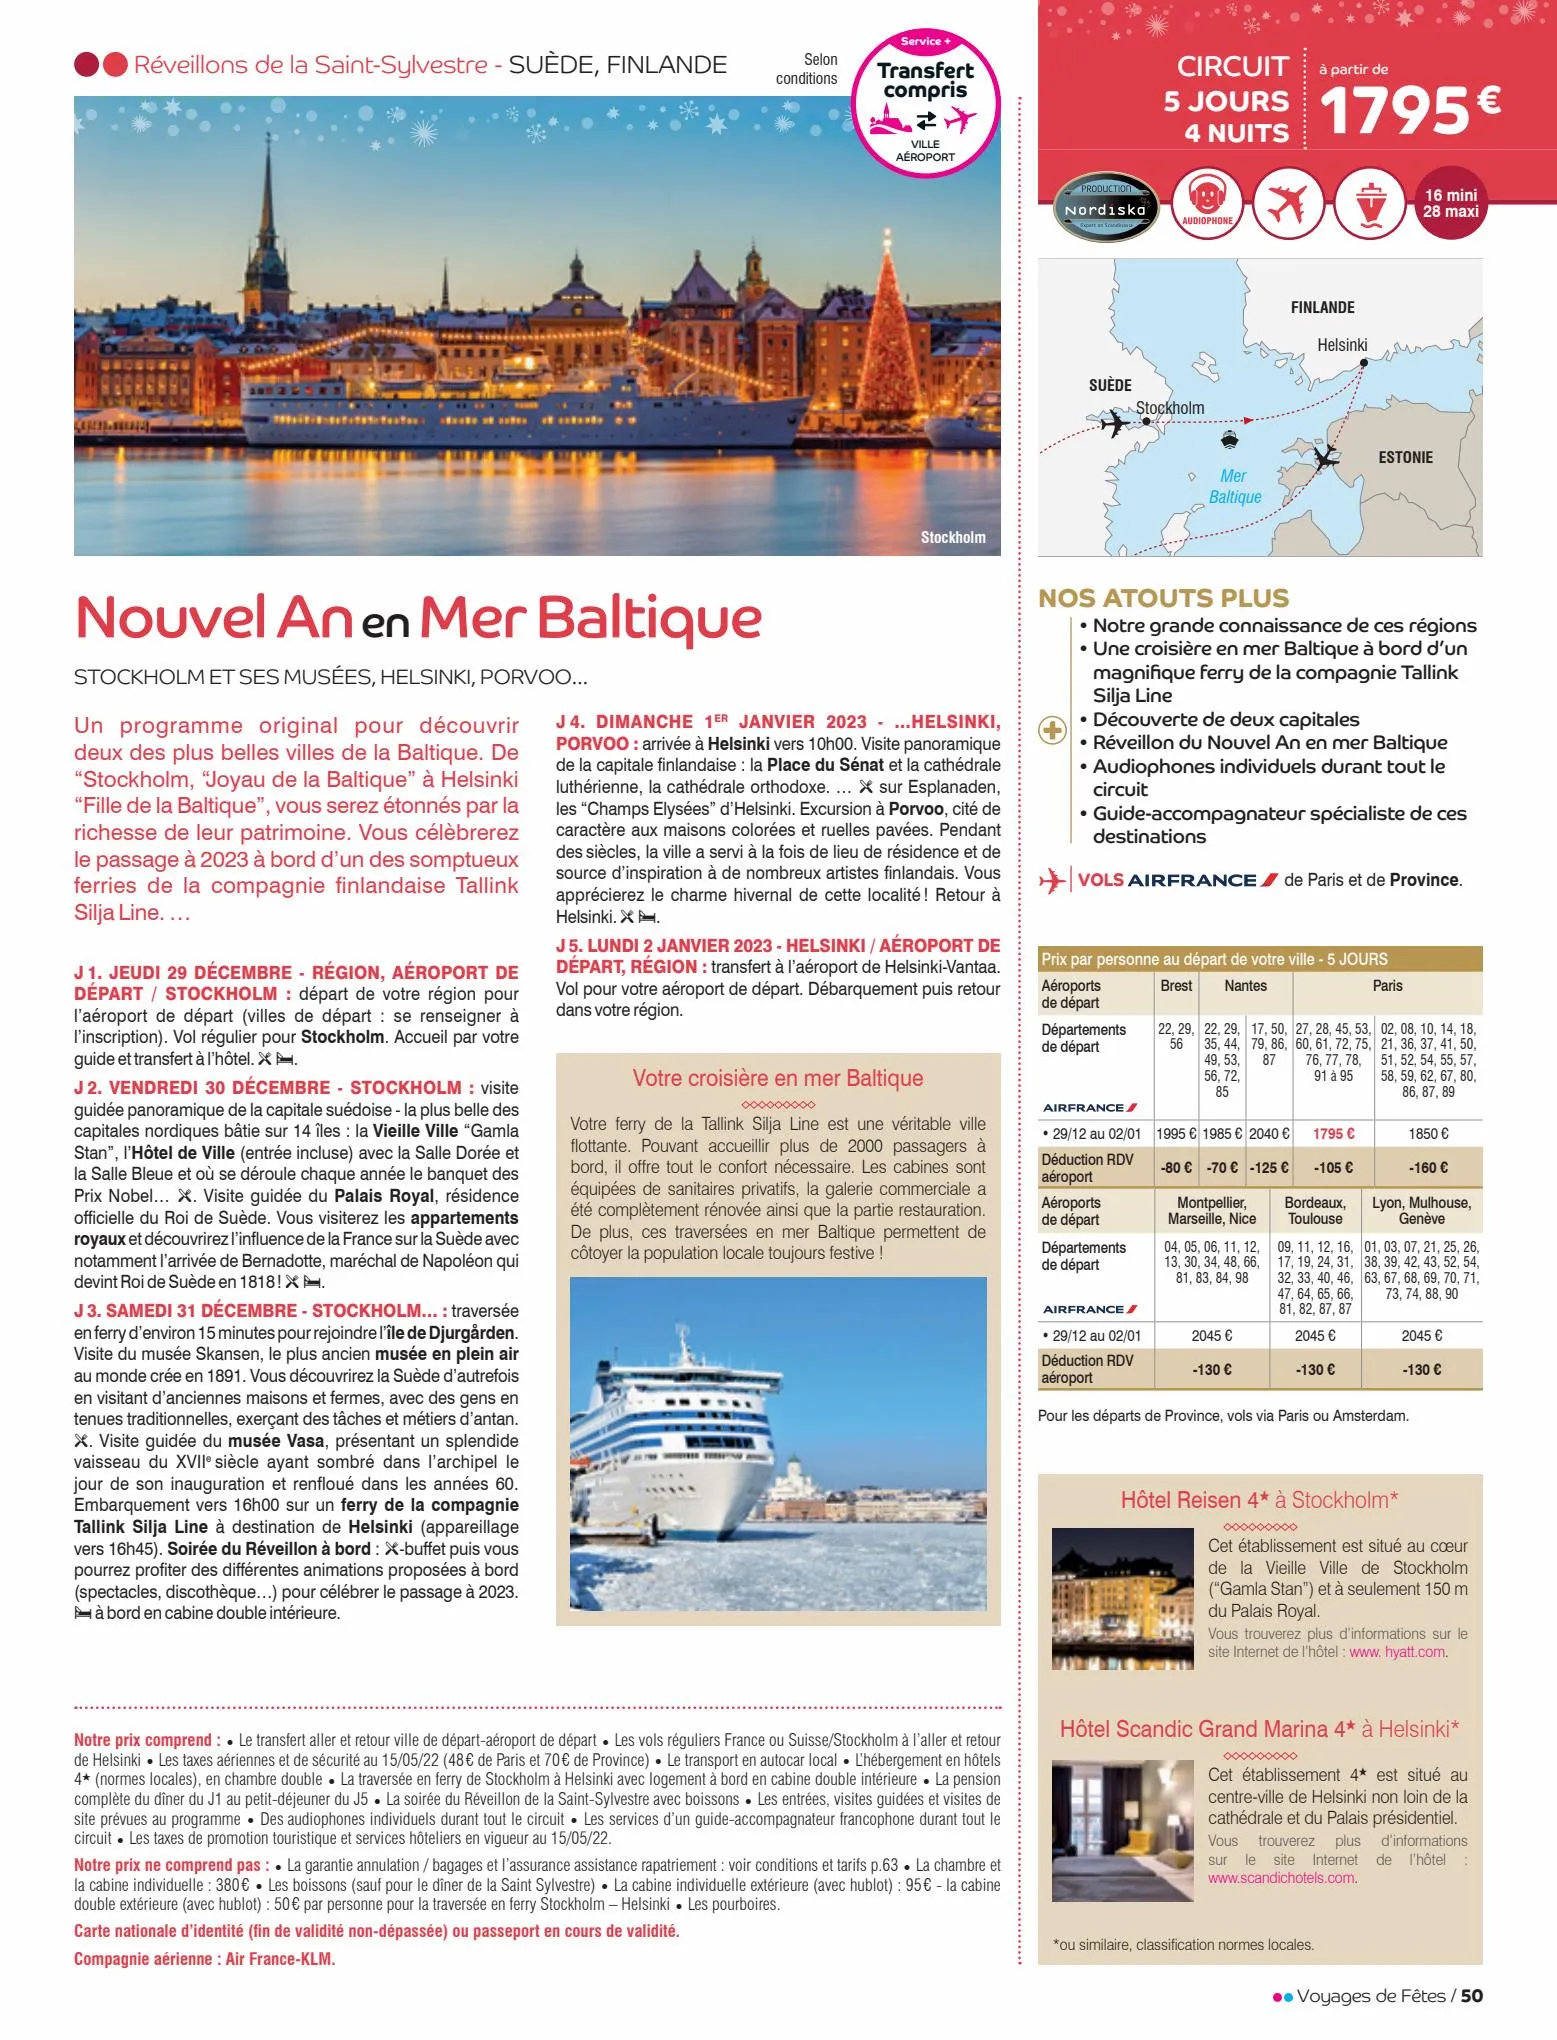 Catalogue Voyages de fêtes 2022-2023, page 00050